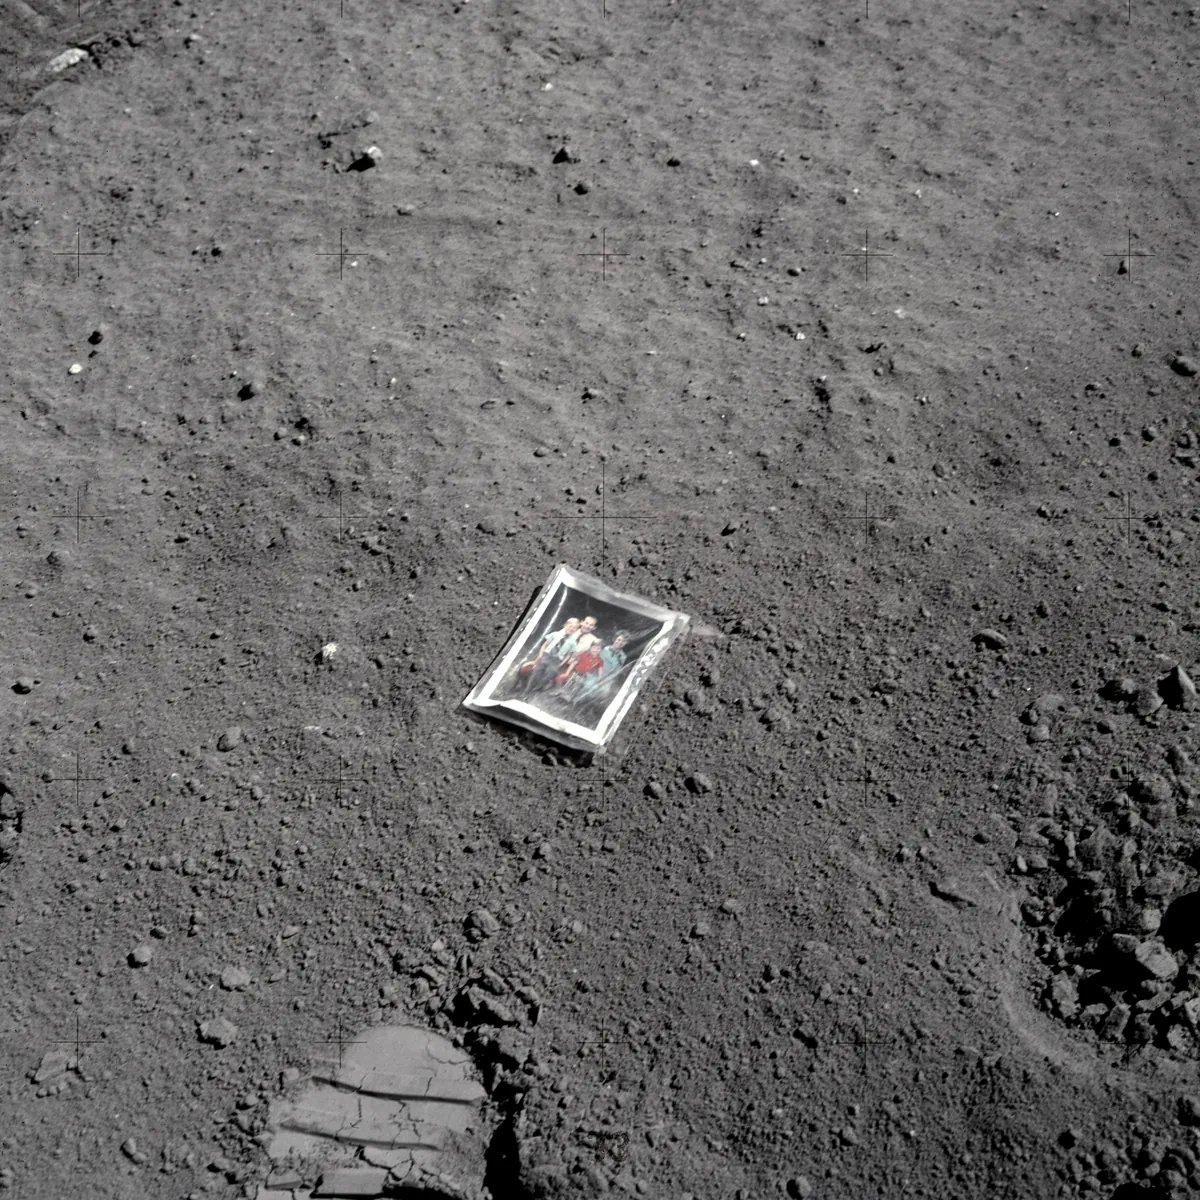 آپولو ۱۶ عکس خانوادگی چارلز دوک در فضا